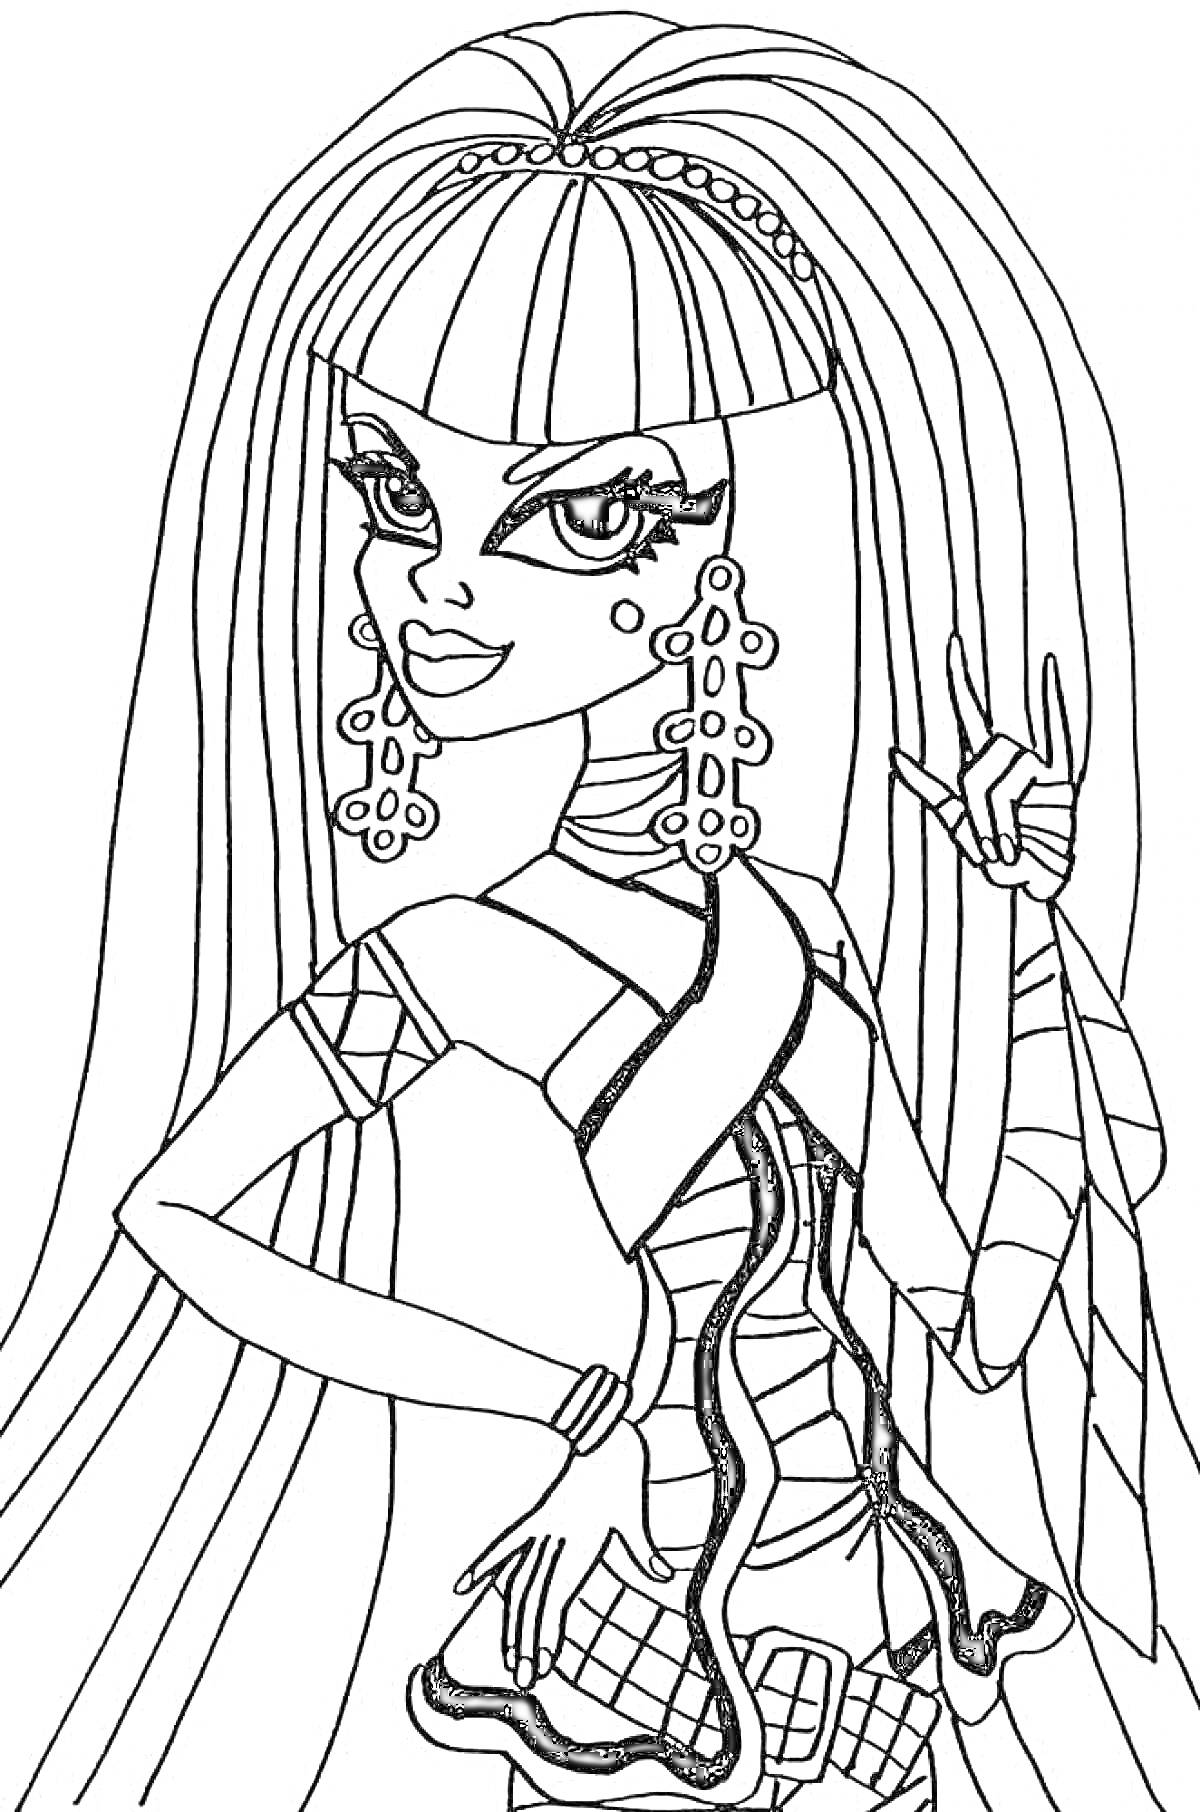 Раскраска Монстр Хай - девушка с длинными волосами и крупными серьгами, в наряде с мумификацией и плетением, со сложными аксессуарами